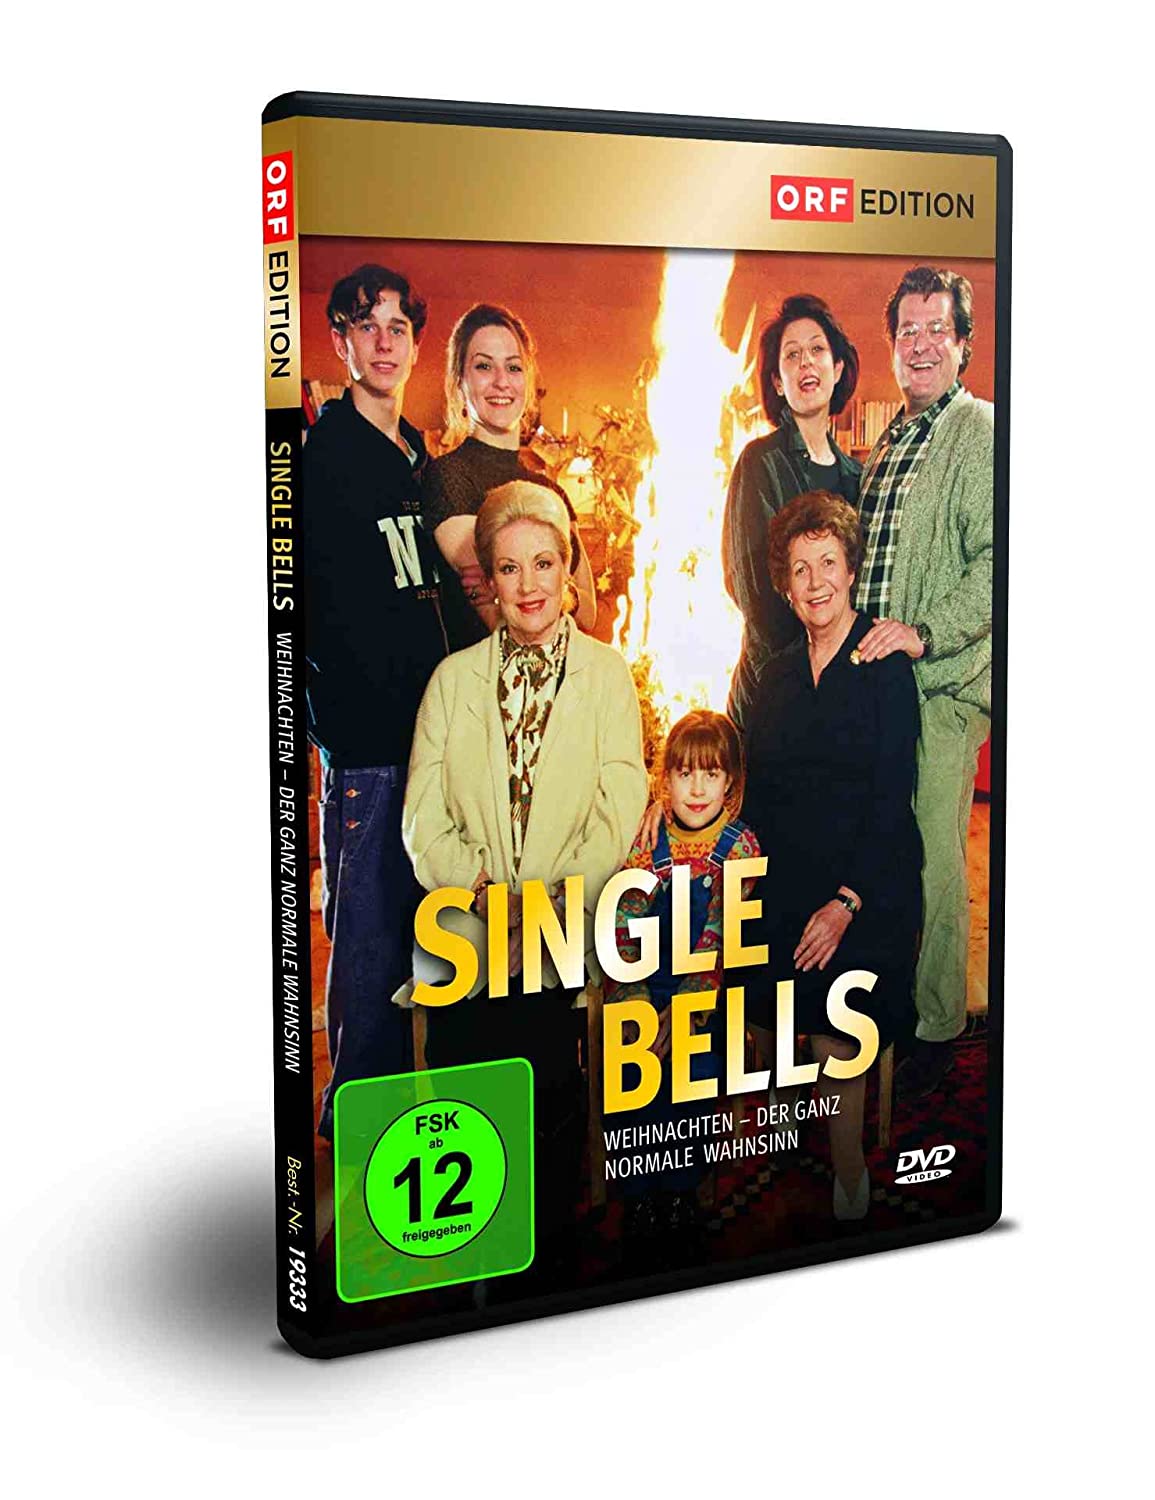 Single Bells - Weihnachten - der ganz normale Wahnsinn